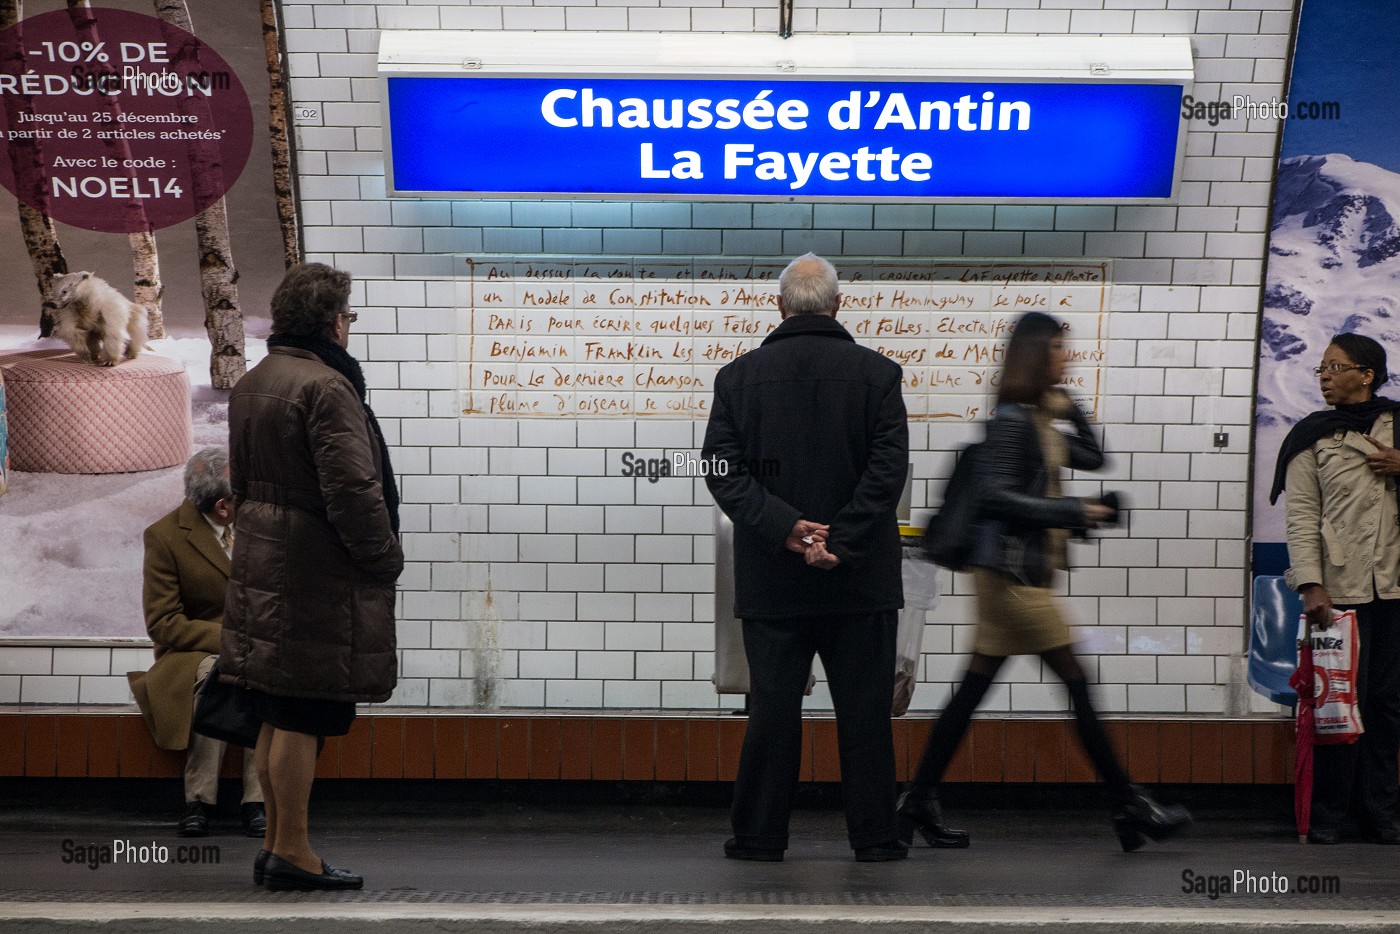 STATION DE METRO DE CHAUSSE D'ANTIN - LAFAYETTE POUR LES GRANDS MAGASINS, PARIS (75), FRANCE 